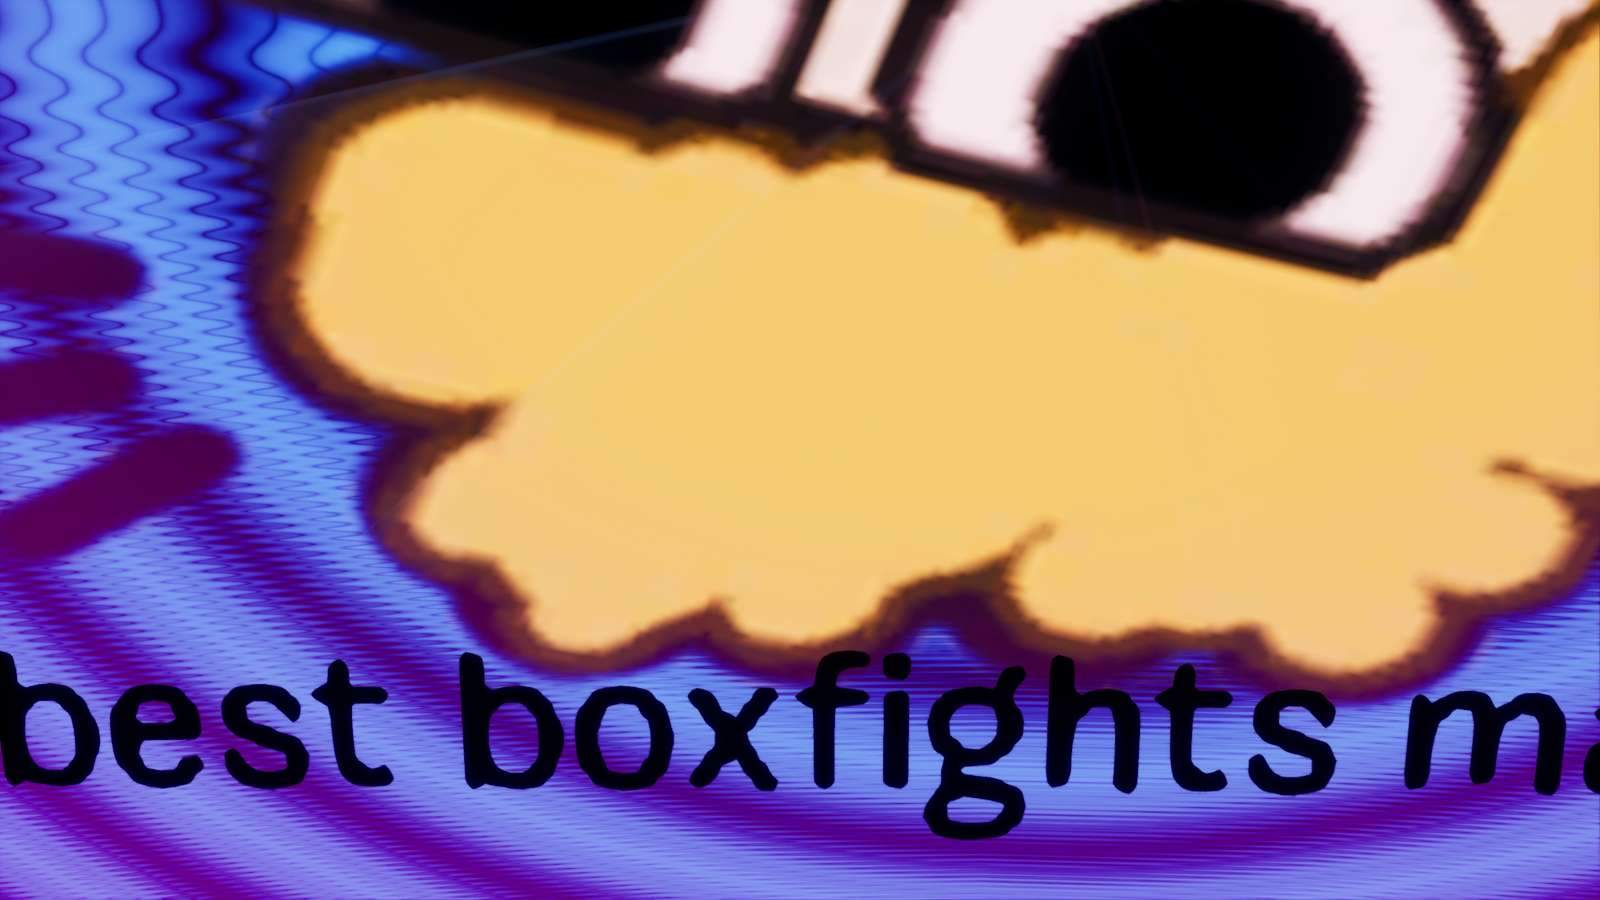 GALAXY BOXFIGHTS!